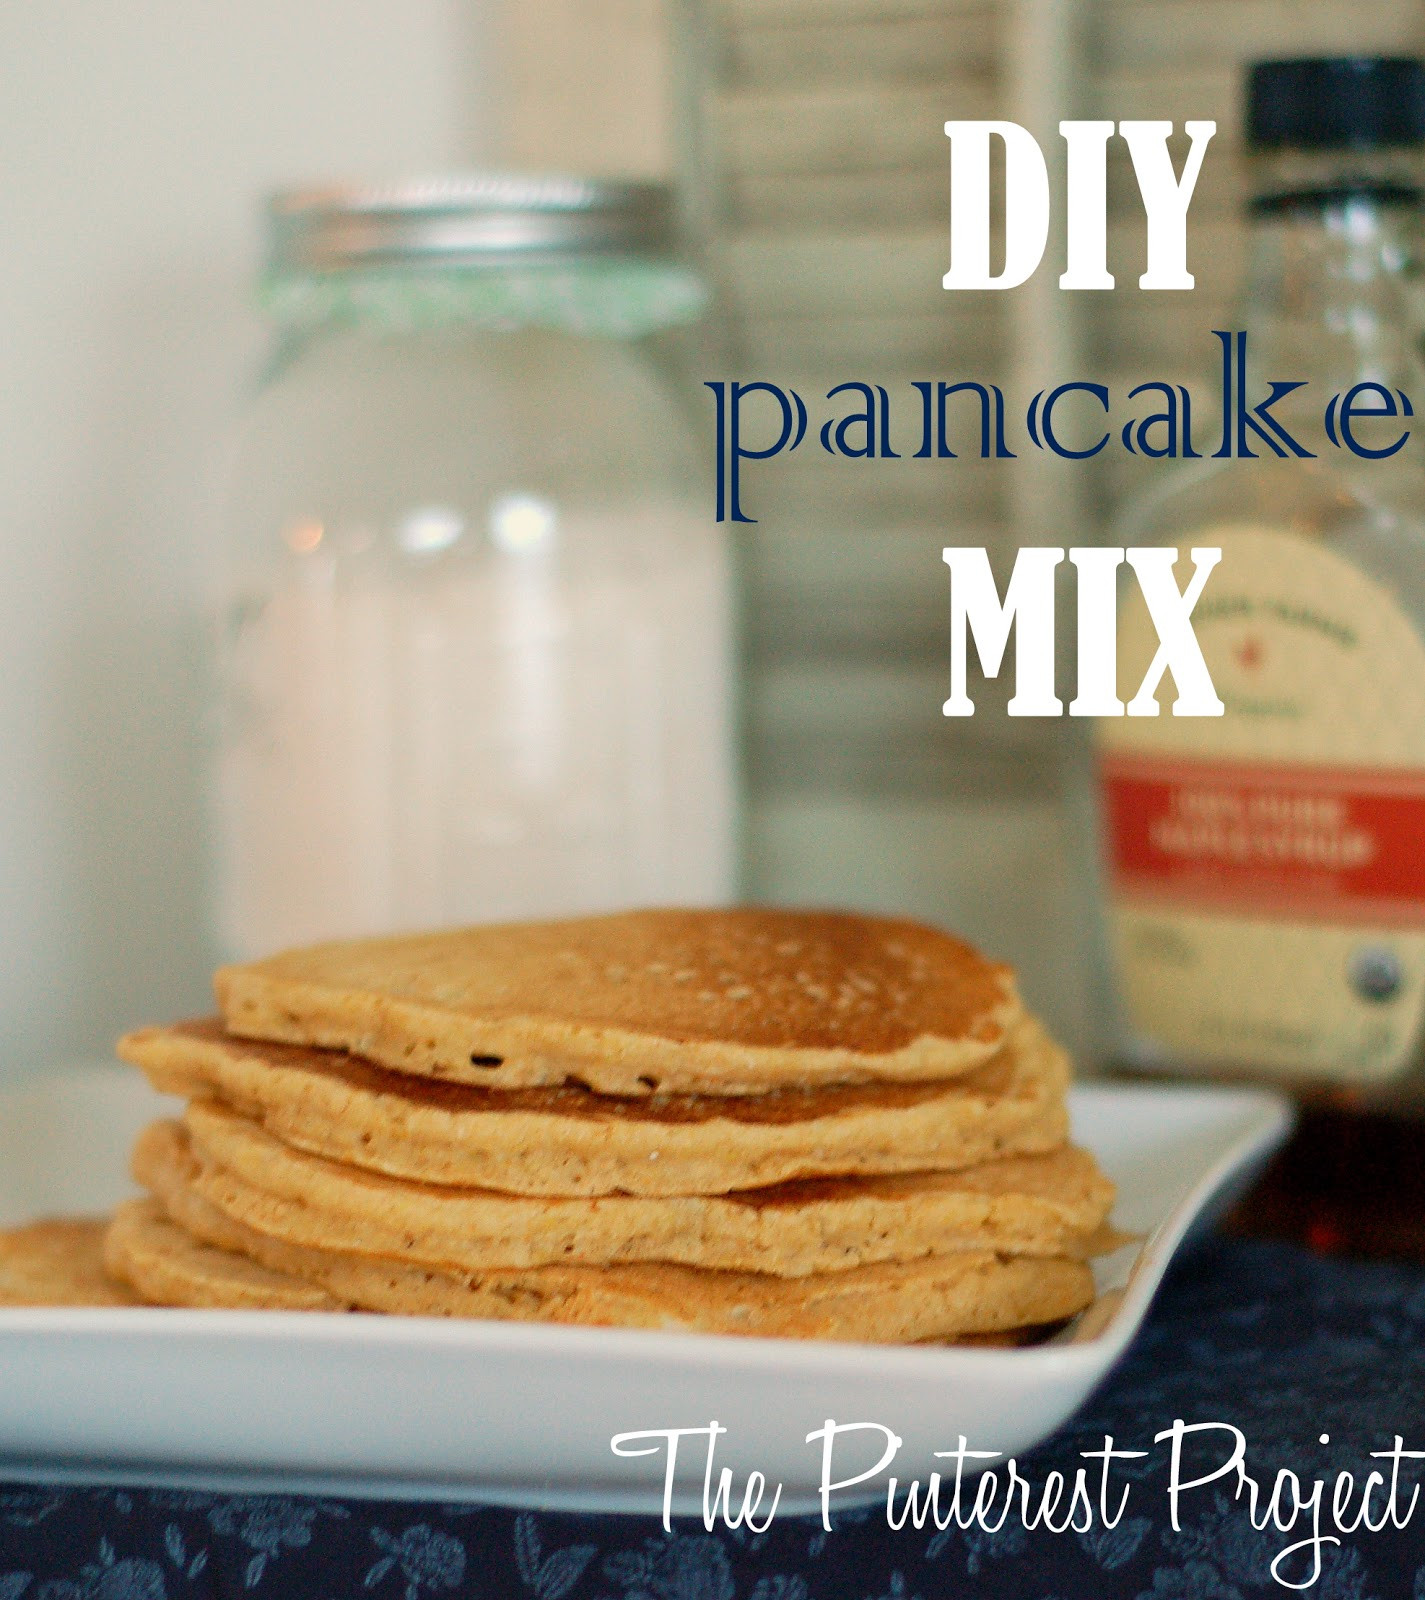 Best ideas about DIY Pancake Mix
. Save or Pin DIY Pancake Mix Now.